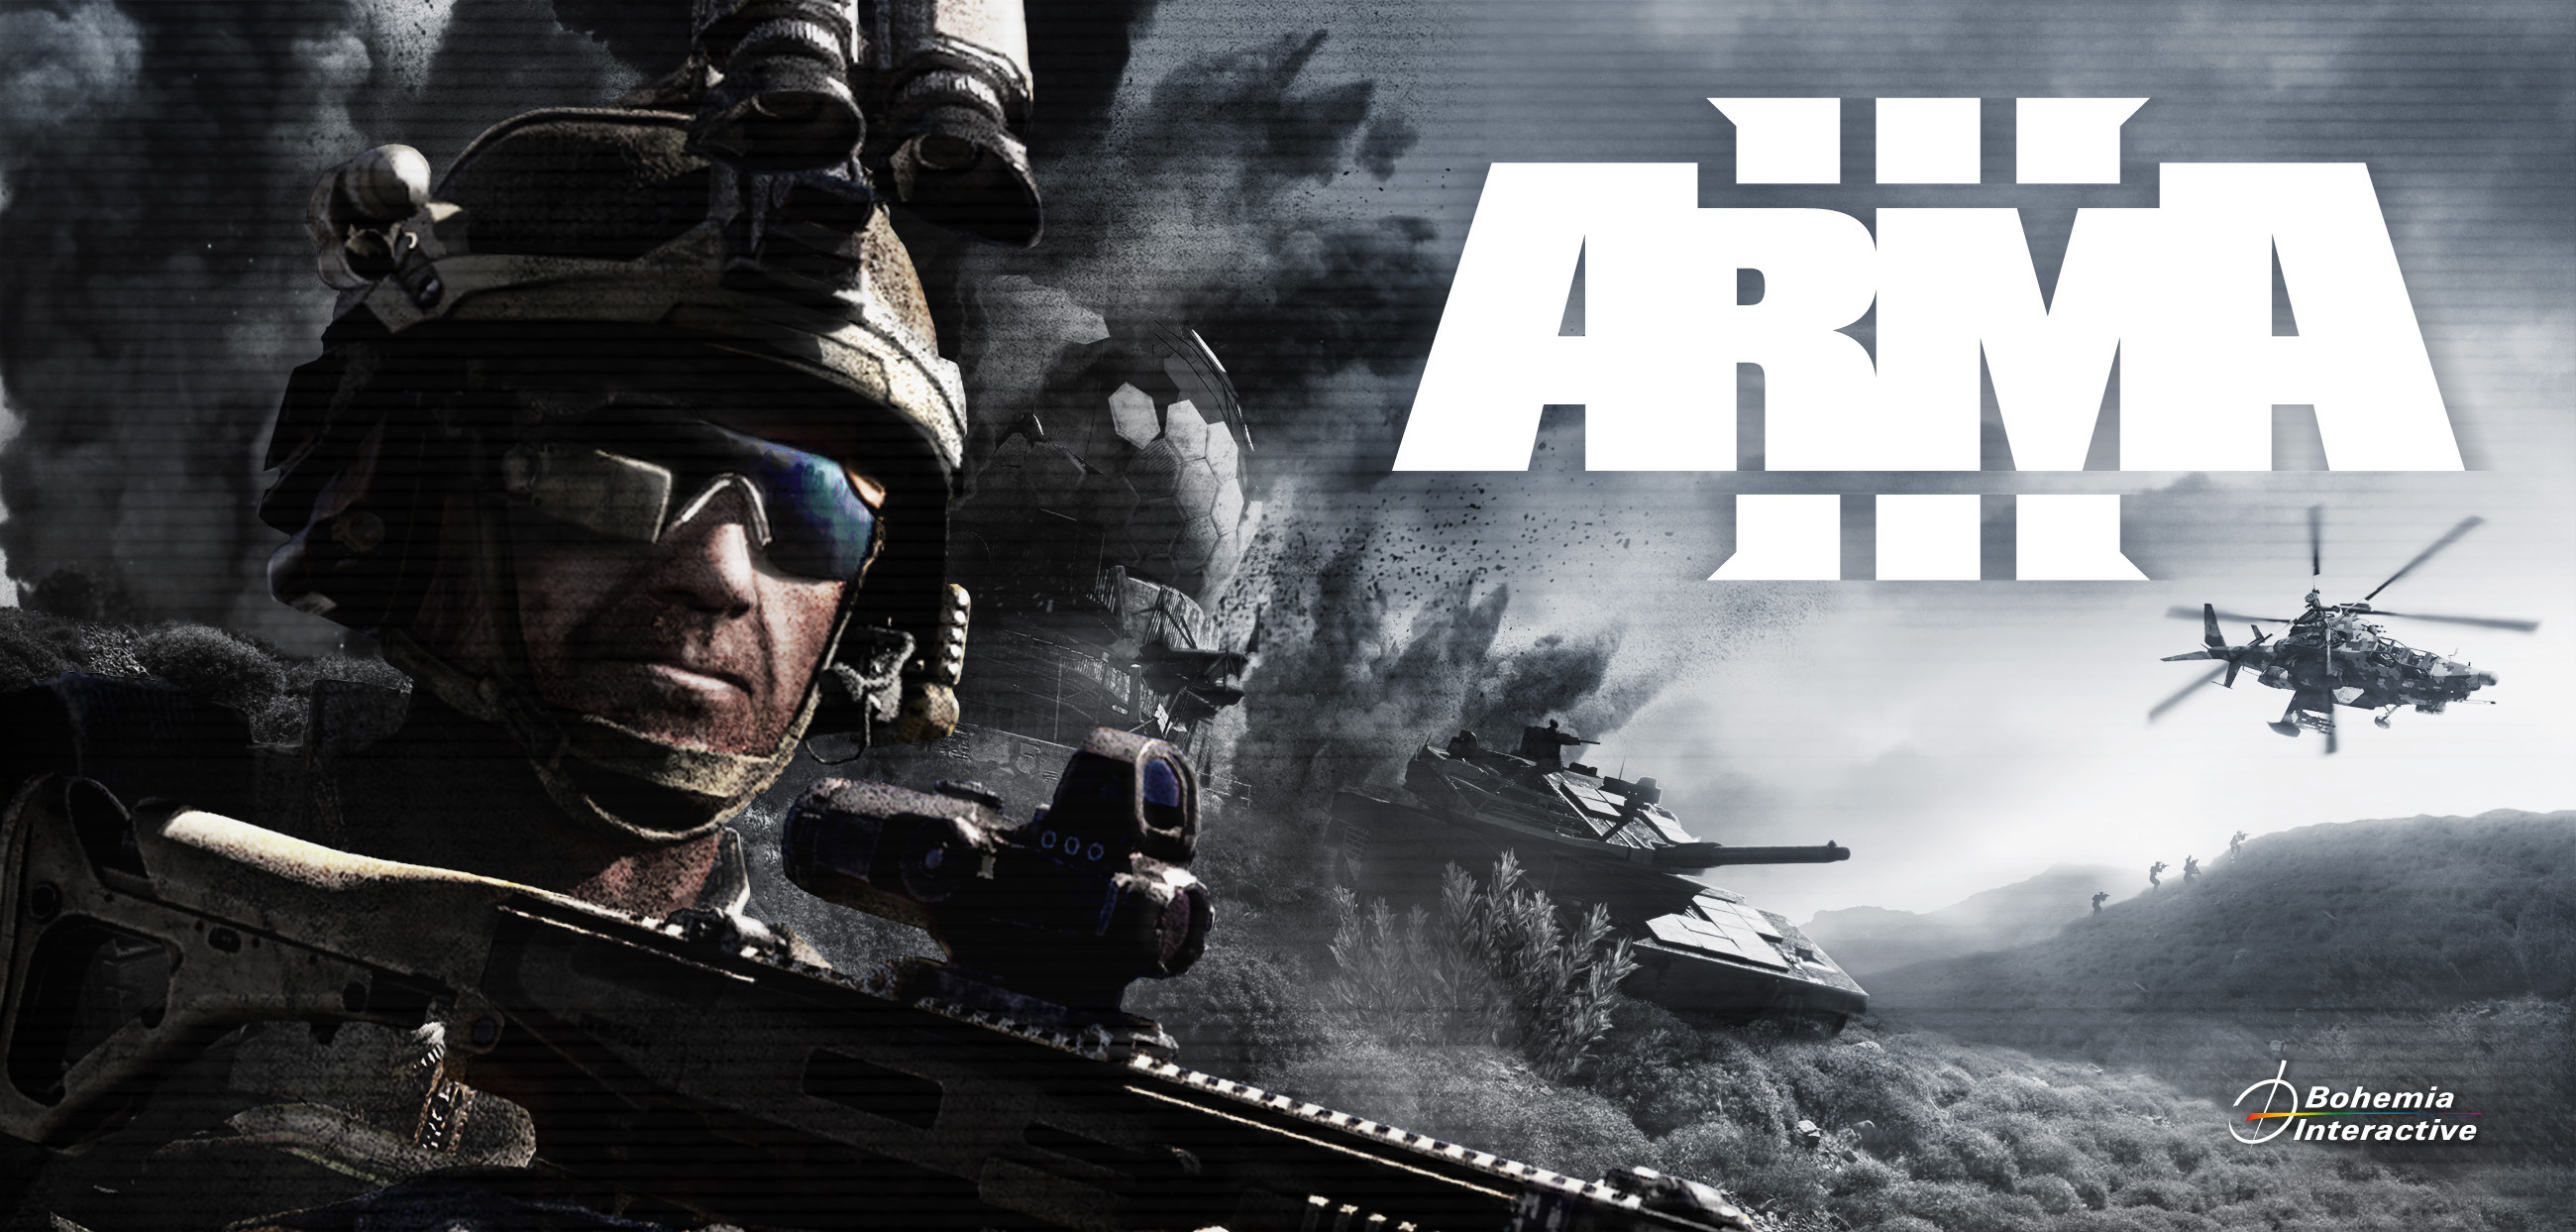 arma 3 apex sneak preview